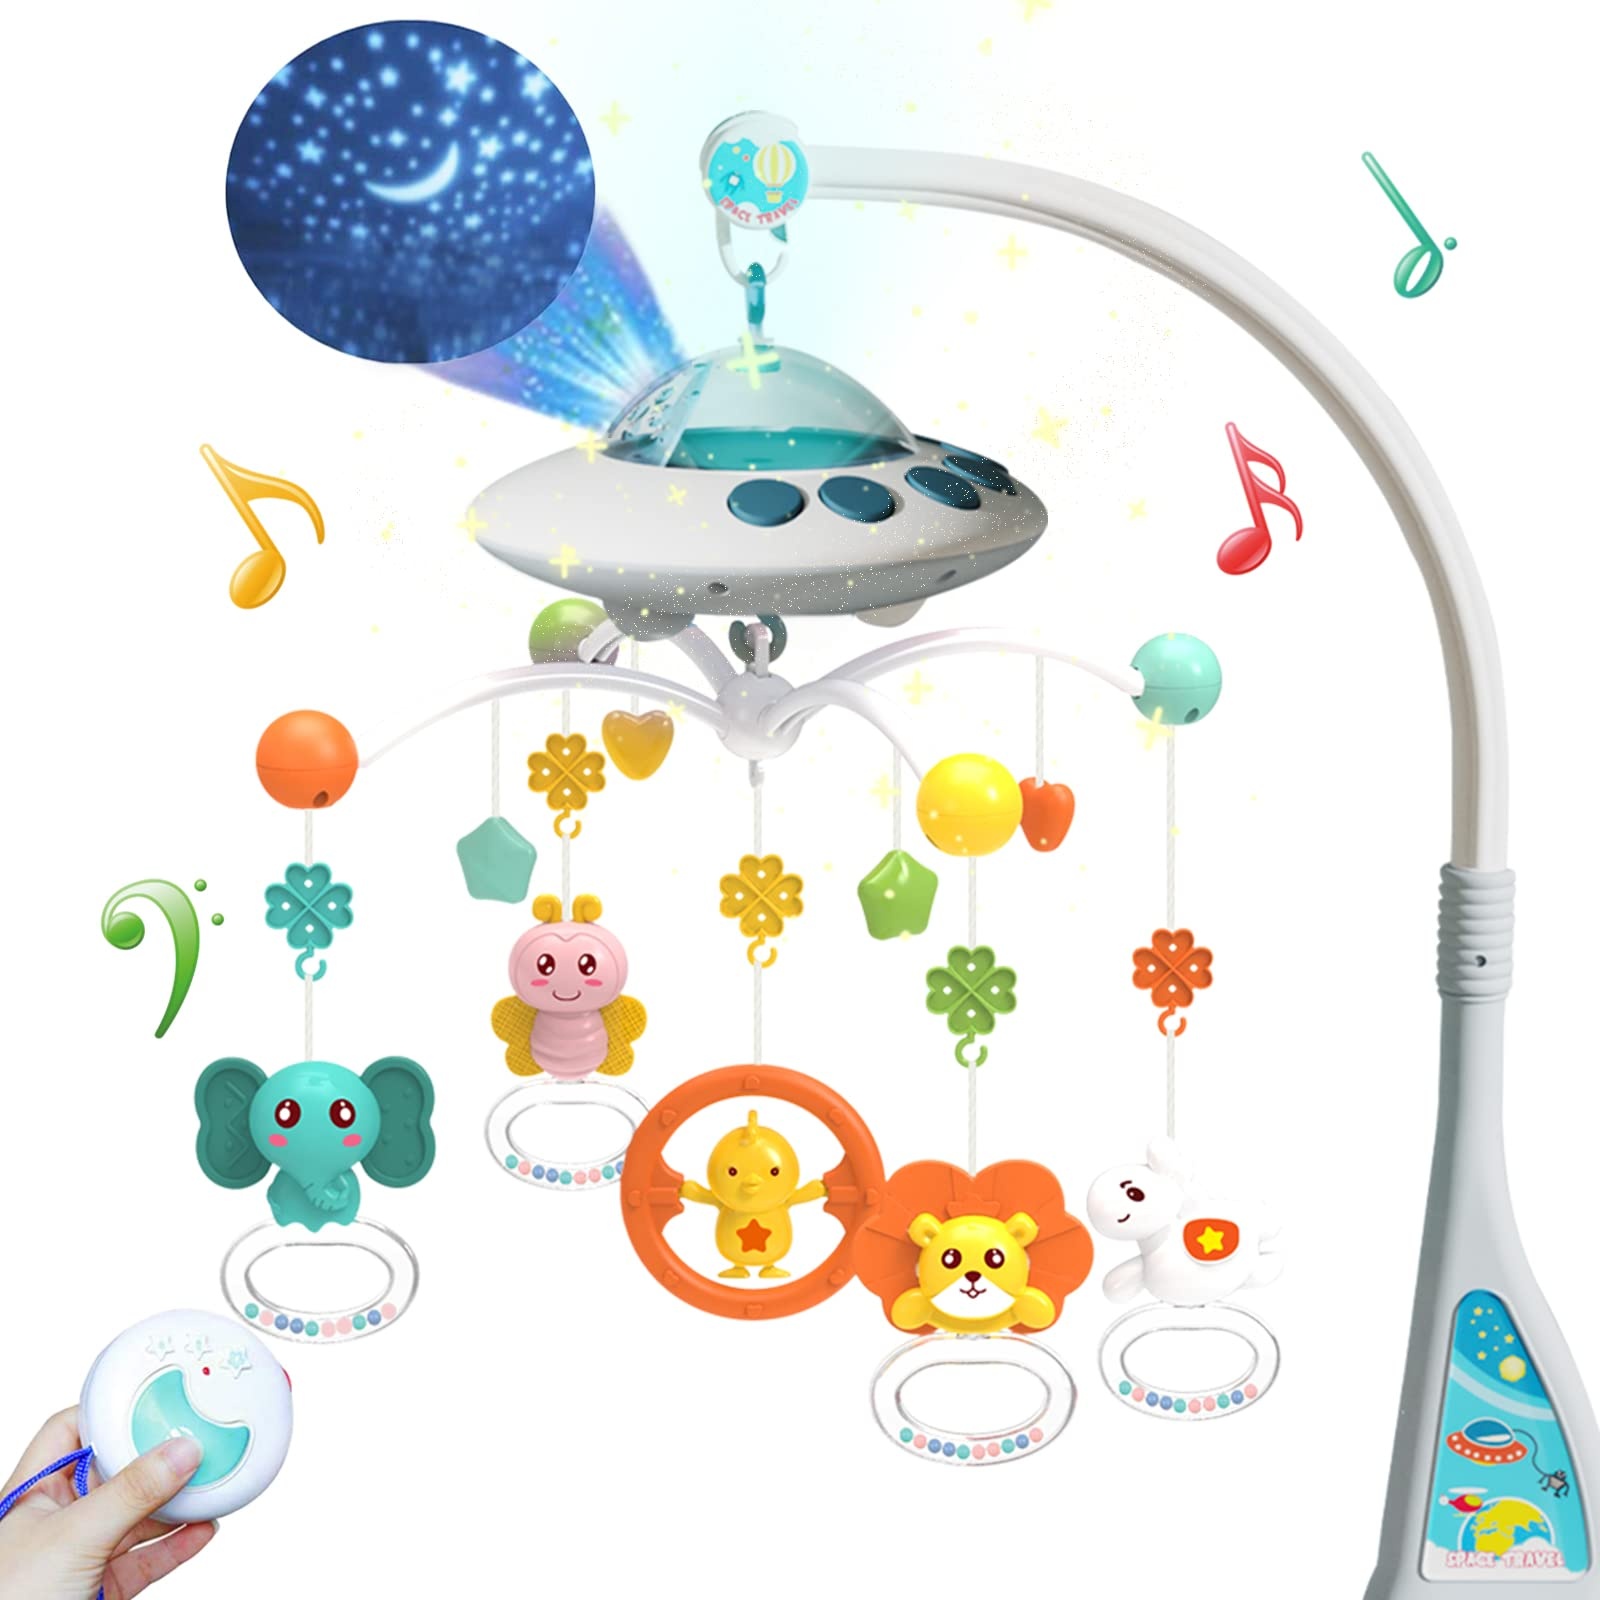 Eners Baby Mobile Babybett mit Musik und Lichtern, Bett Mädchen Junge mit Fernbedienung, Spieluhr,Stern und Mond Projektion, Spielzeug 0 3 6 9 12 Monate (Blau)